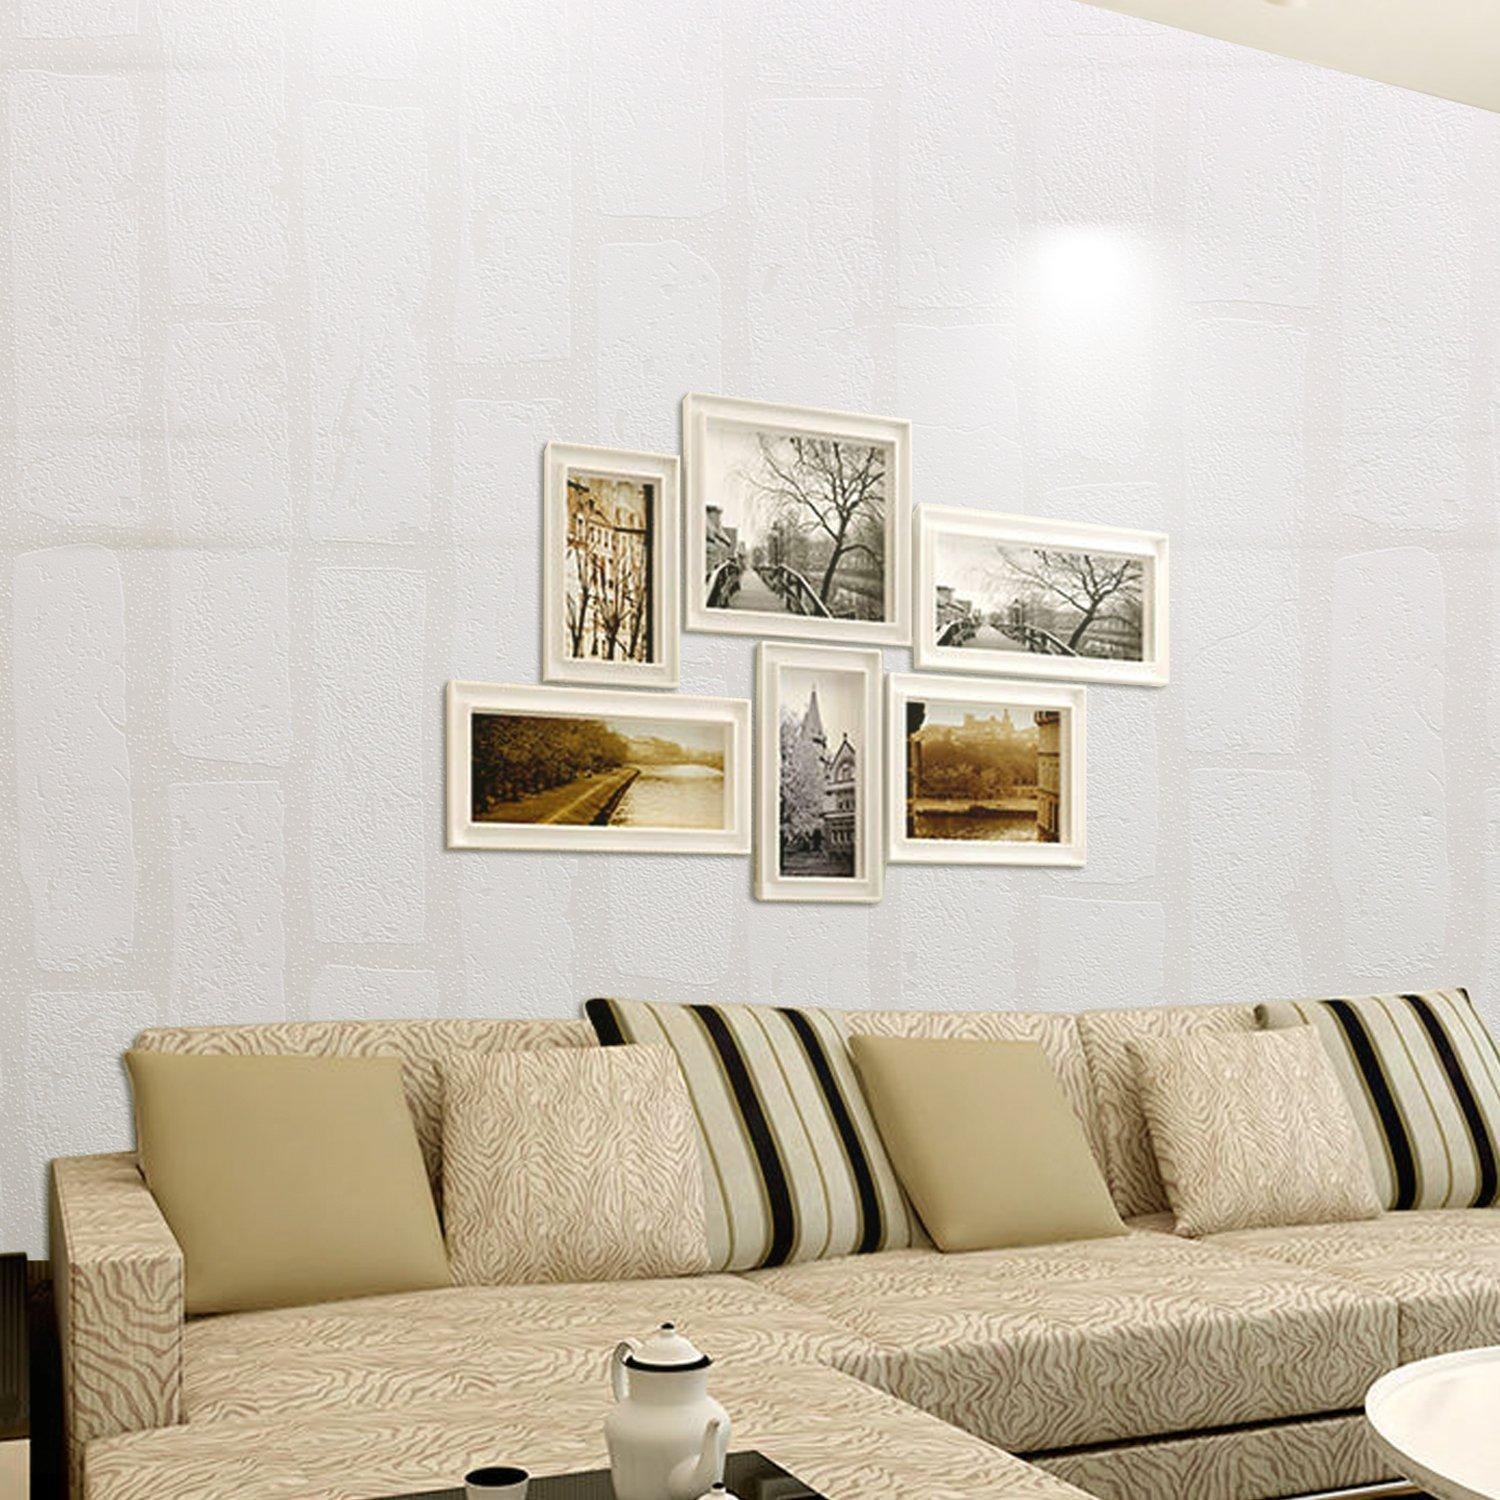 décor à la maison papier peint coréen,salon,meubles,chambre,canapé,design d'intérieur